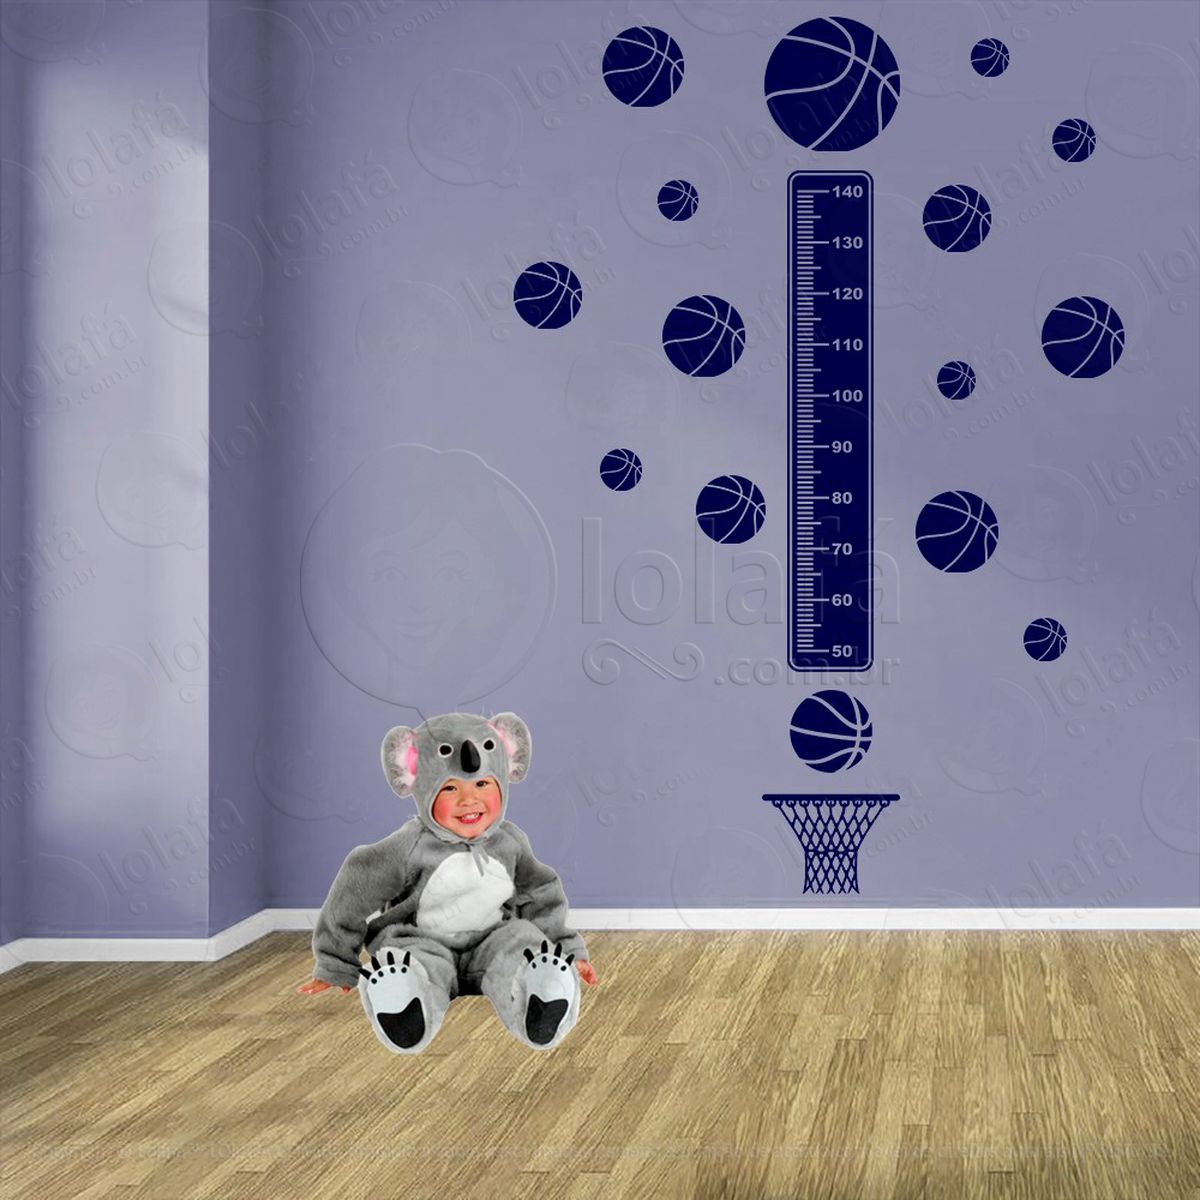 basquetebol e bolas de basquete adesivo régua de crescimento infantil, medidor de altura para quarto, porta e parede - mod:278